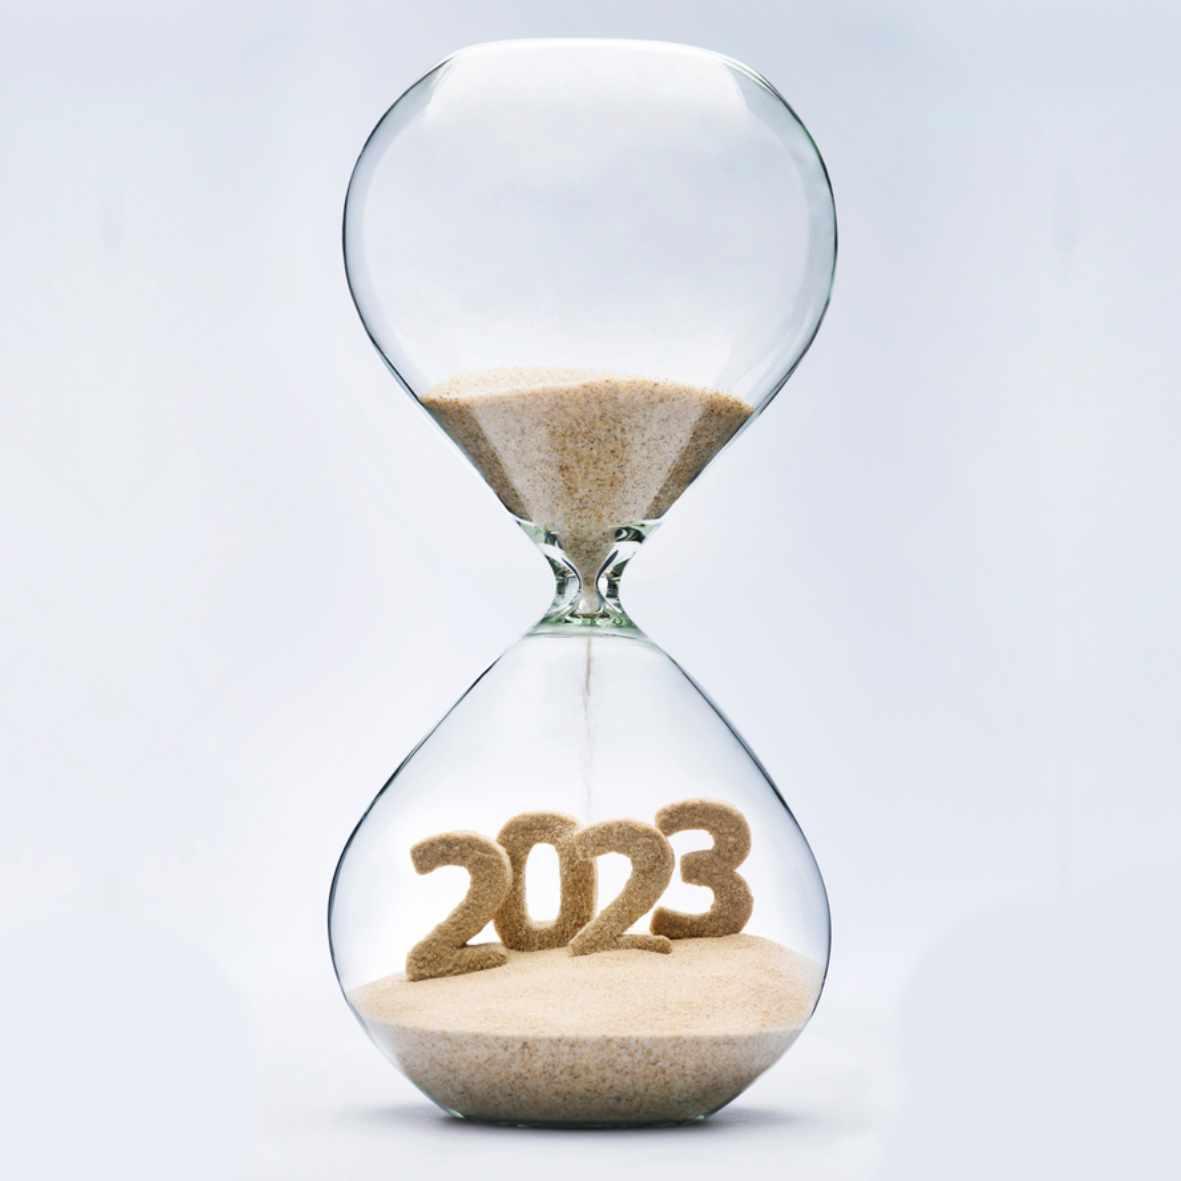 Quizz Actualités pour EHPAD et résidences seniors - Le monde en 2023